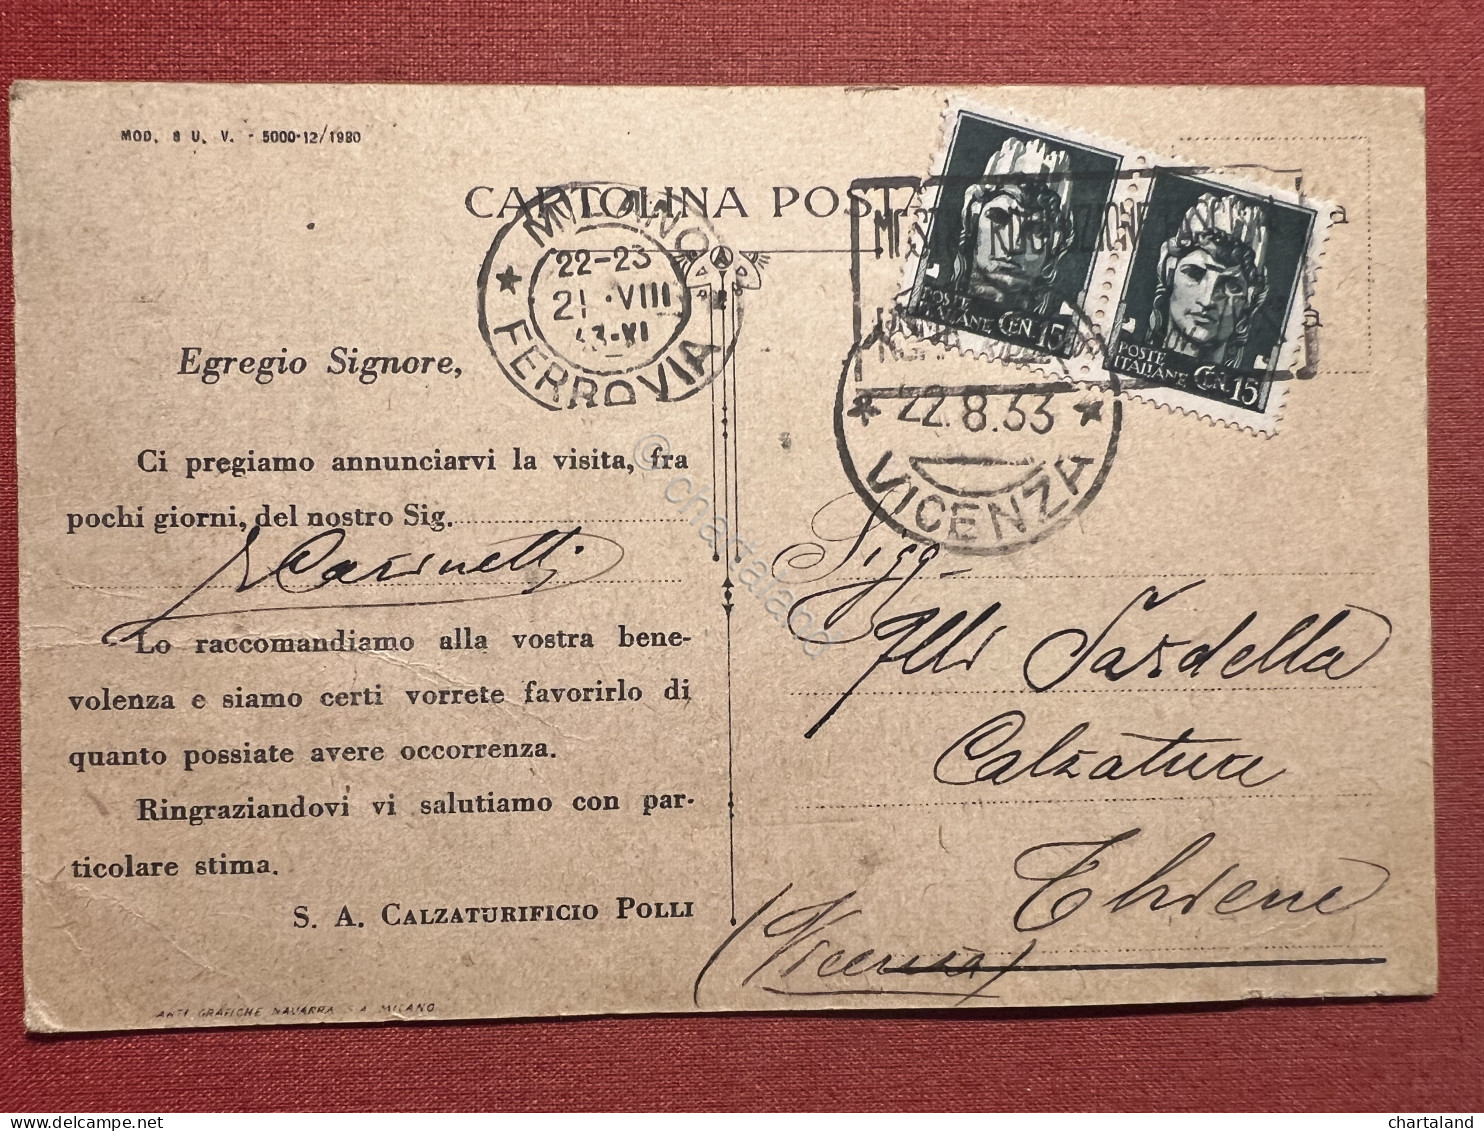 Cartolina Pubblicitaria - Ideal - Società Calzaturificio Pozzi, Milano - 1933 - Werbepostkarten